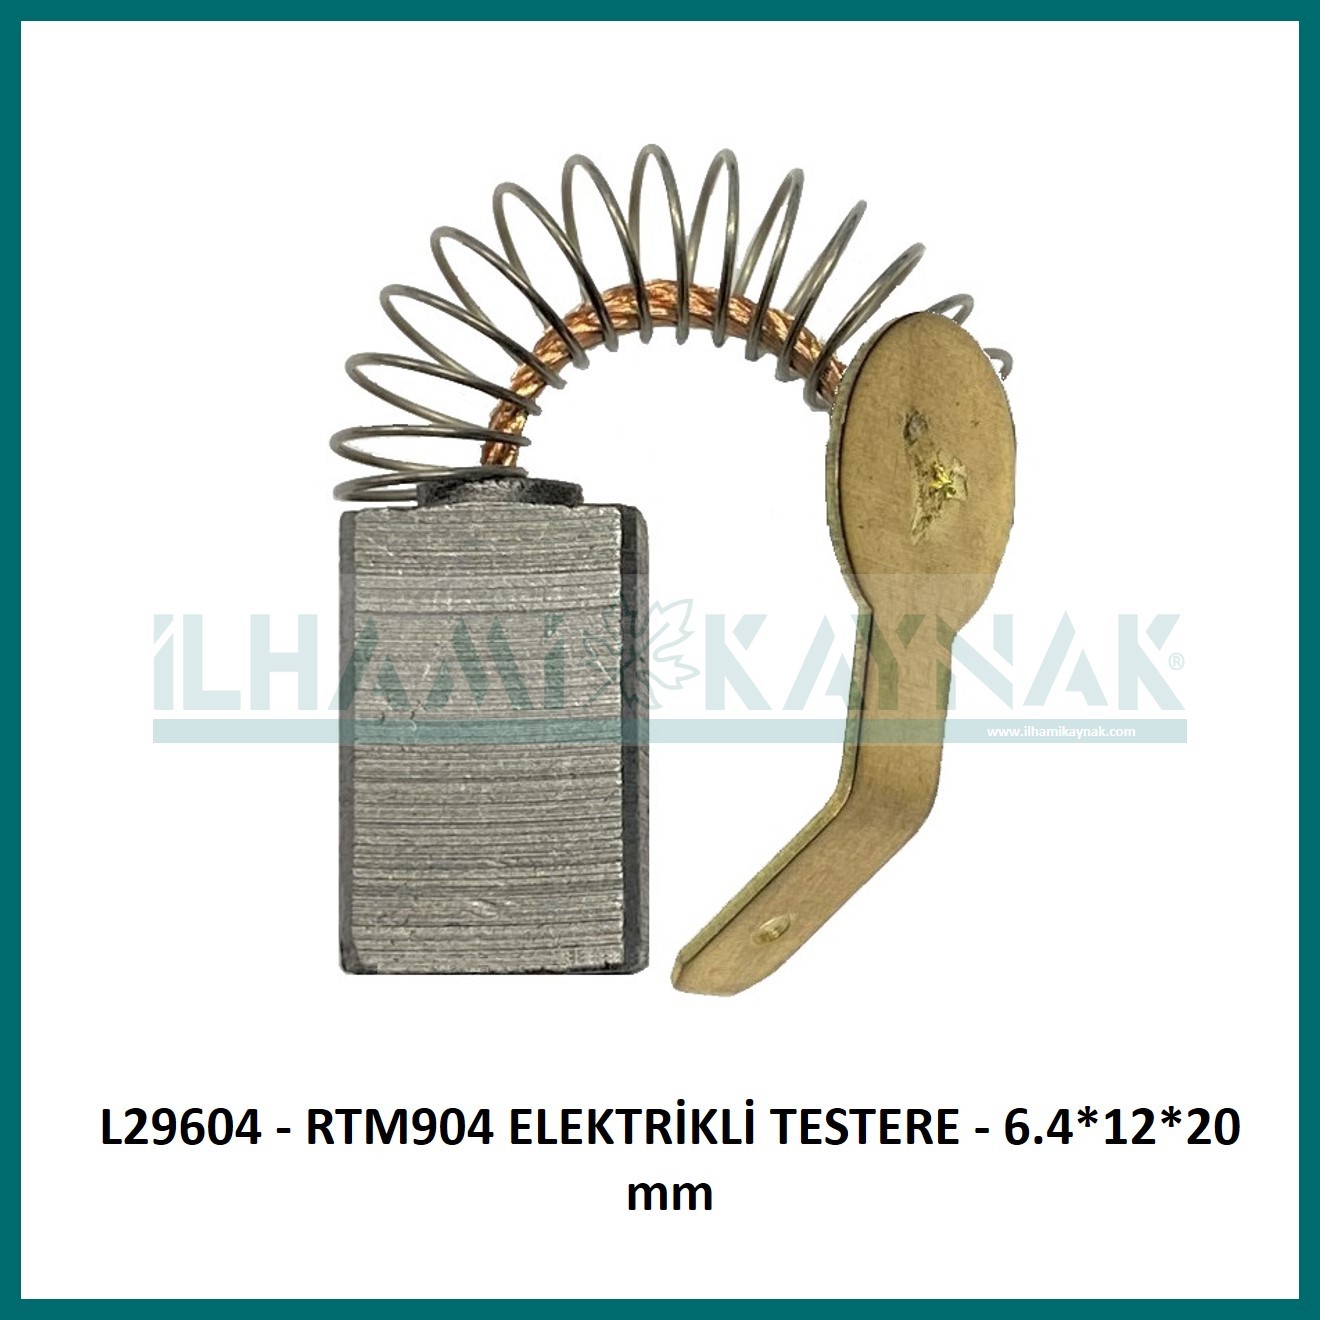 L29604 - RTM904 ELEKTRİKLİ TESTERE - 6.4*12*20 mm - 100 Adet